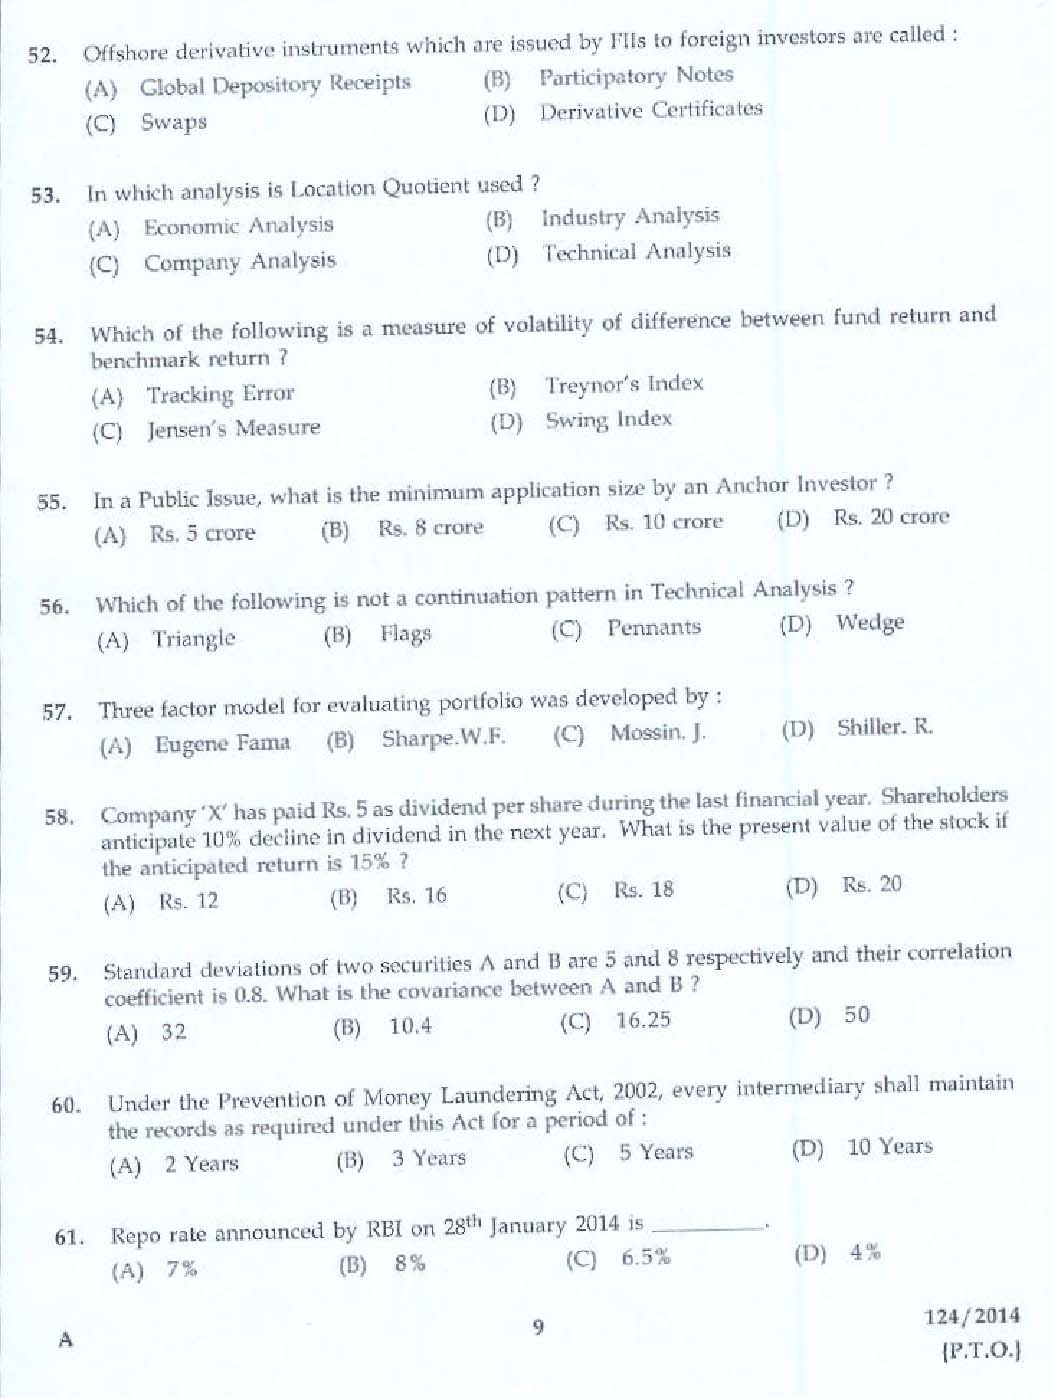 KPSC Lecturer in Commerce Exam 2014 Code 1242014 7